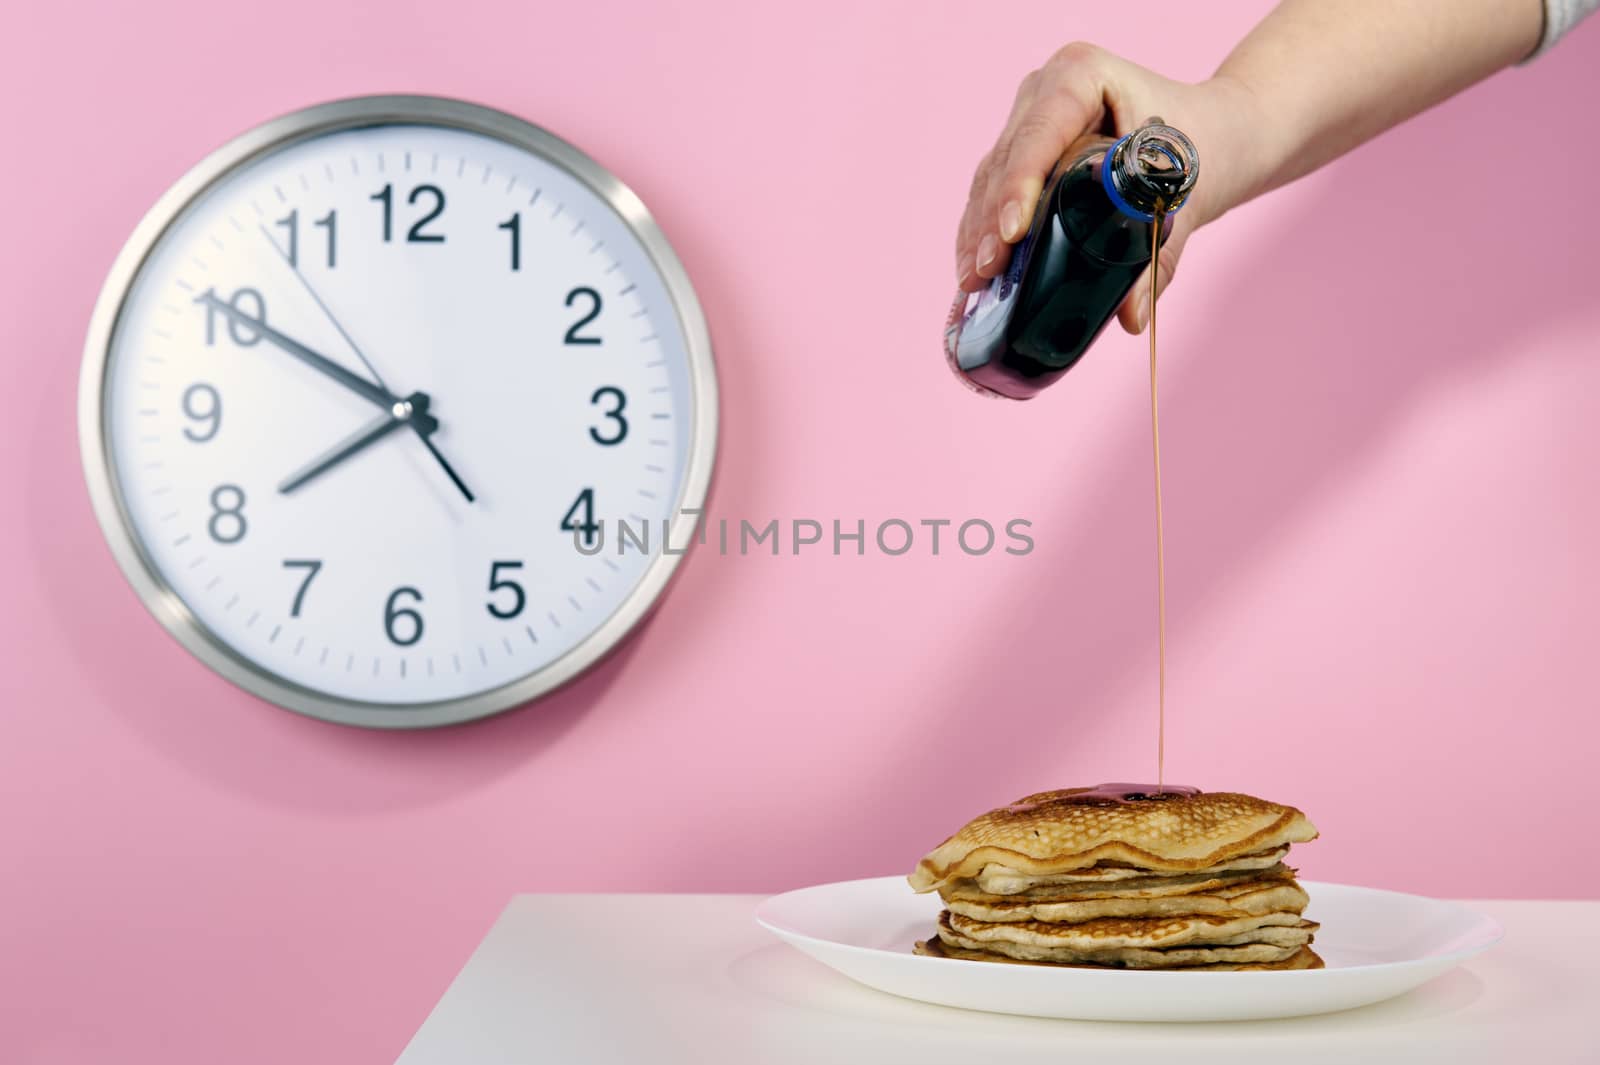 American pancakes by Michalowski